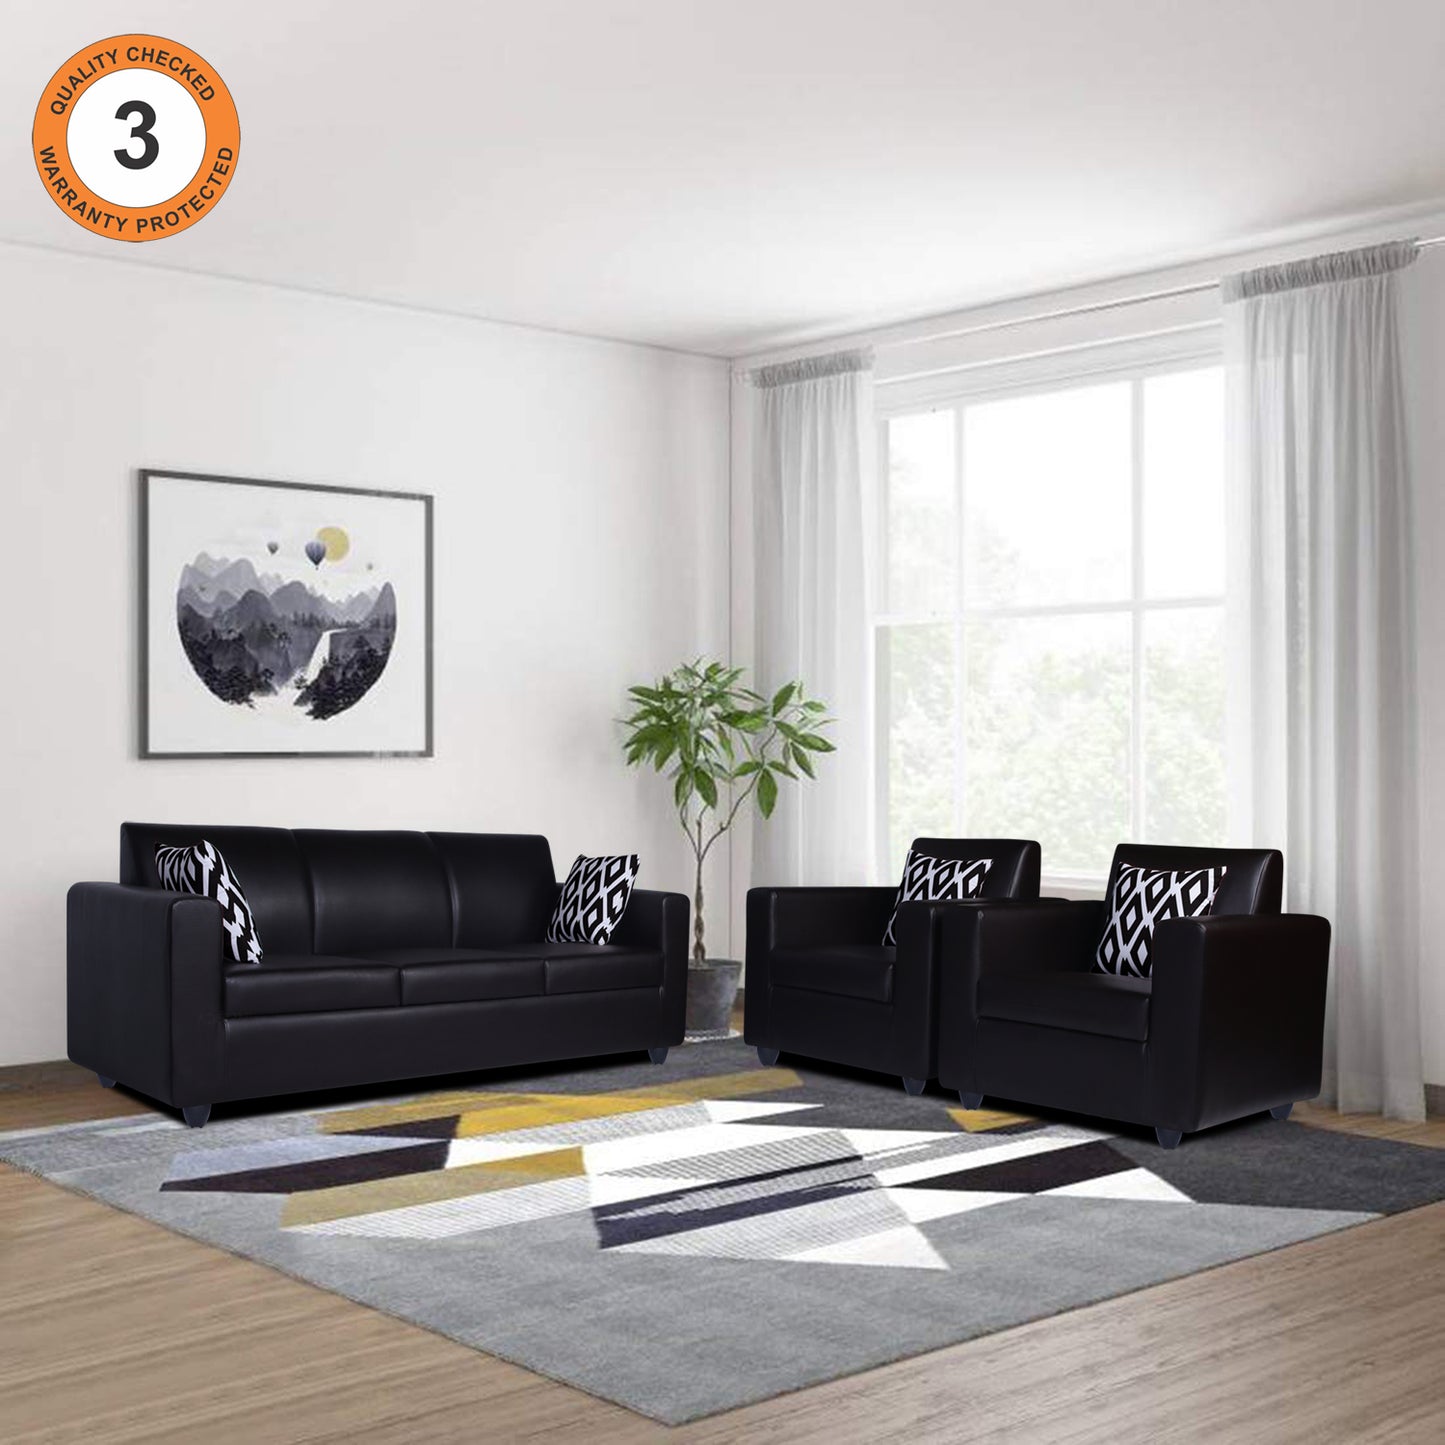 Adorn India Monteno Leatherette 5 Seater 3-1-1 Sofa Set (Black)